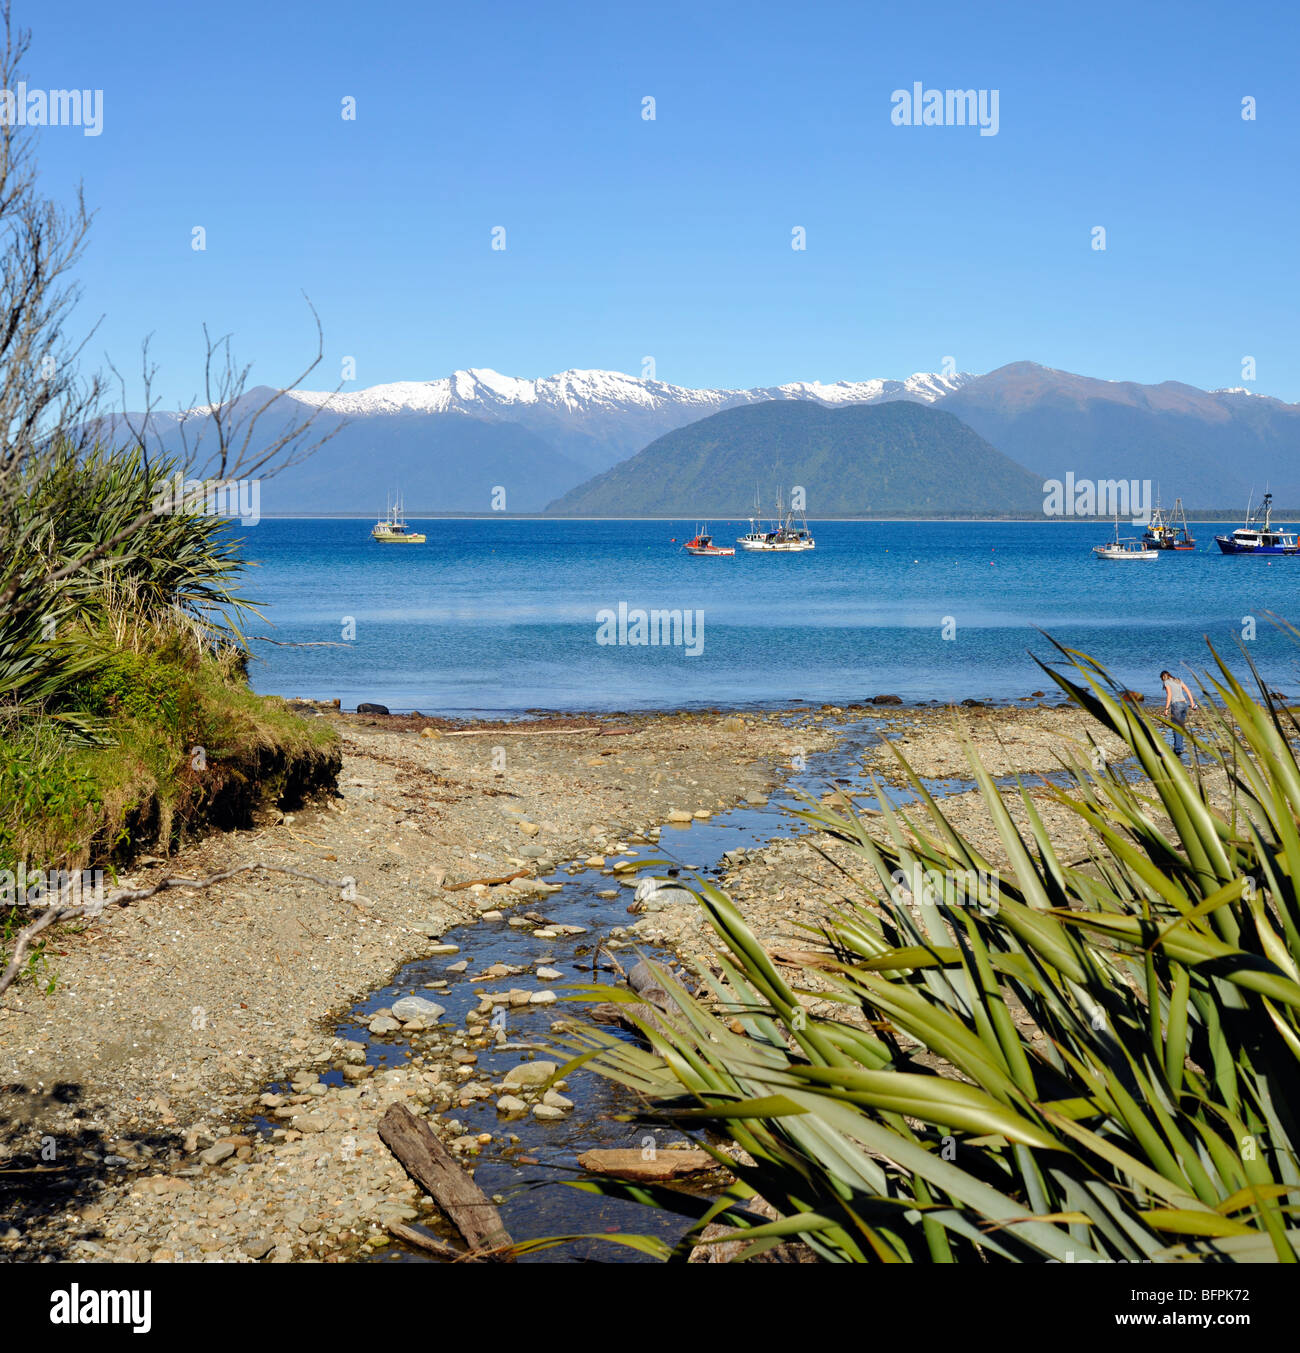 Nuova Zelanda Jackson Bay sulla costa occidentale dell'isola sud mezz'ora a sud di Haast. Foto Stock